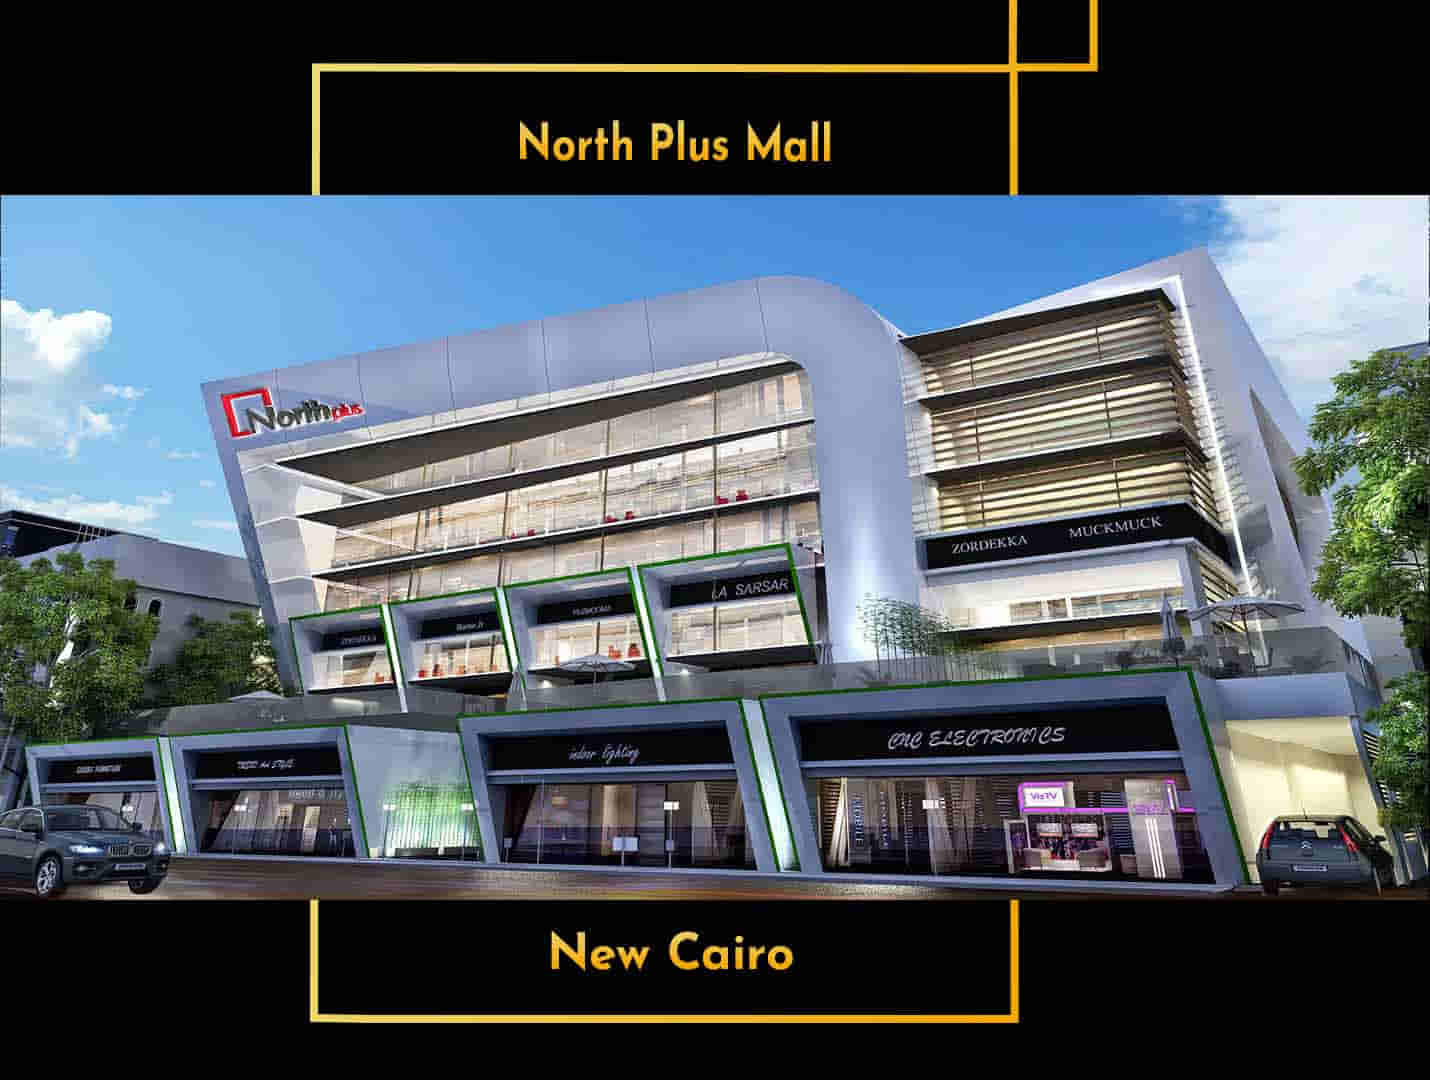 مول نورث بلس القاهرة الجديدة كتاليست – North Plus New Cairo Mall